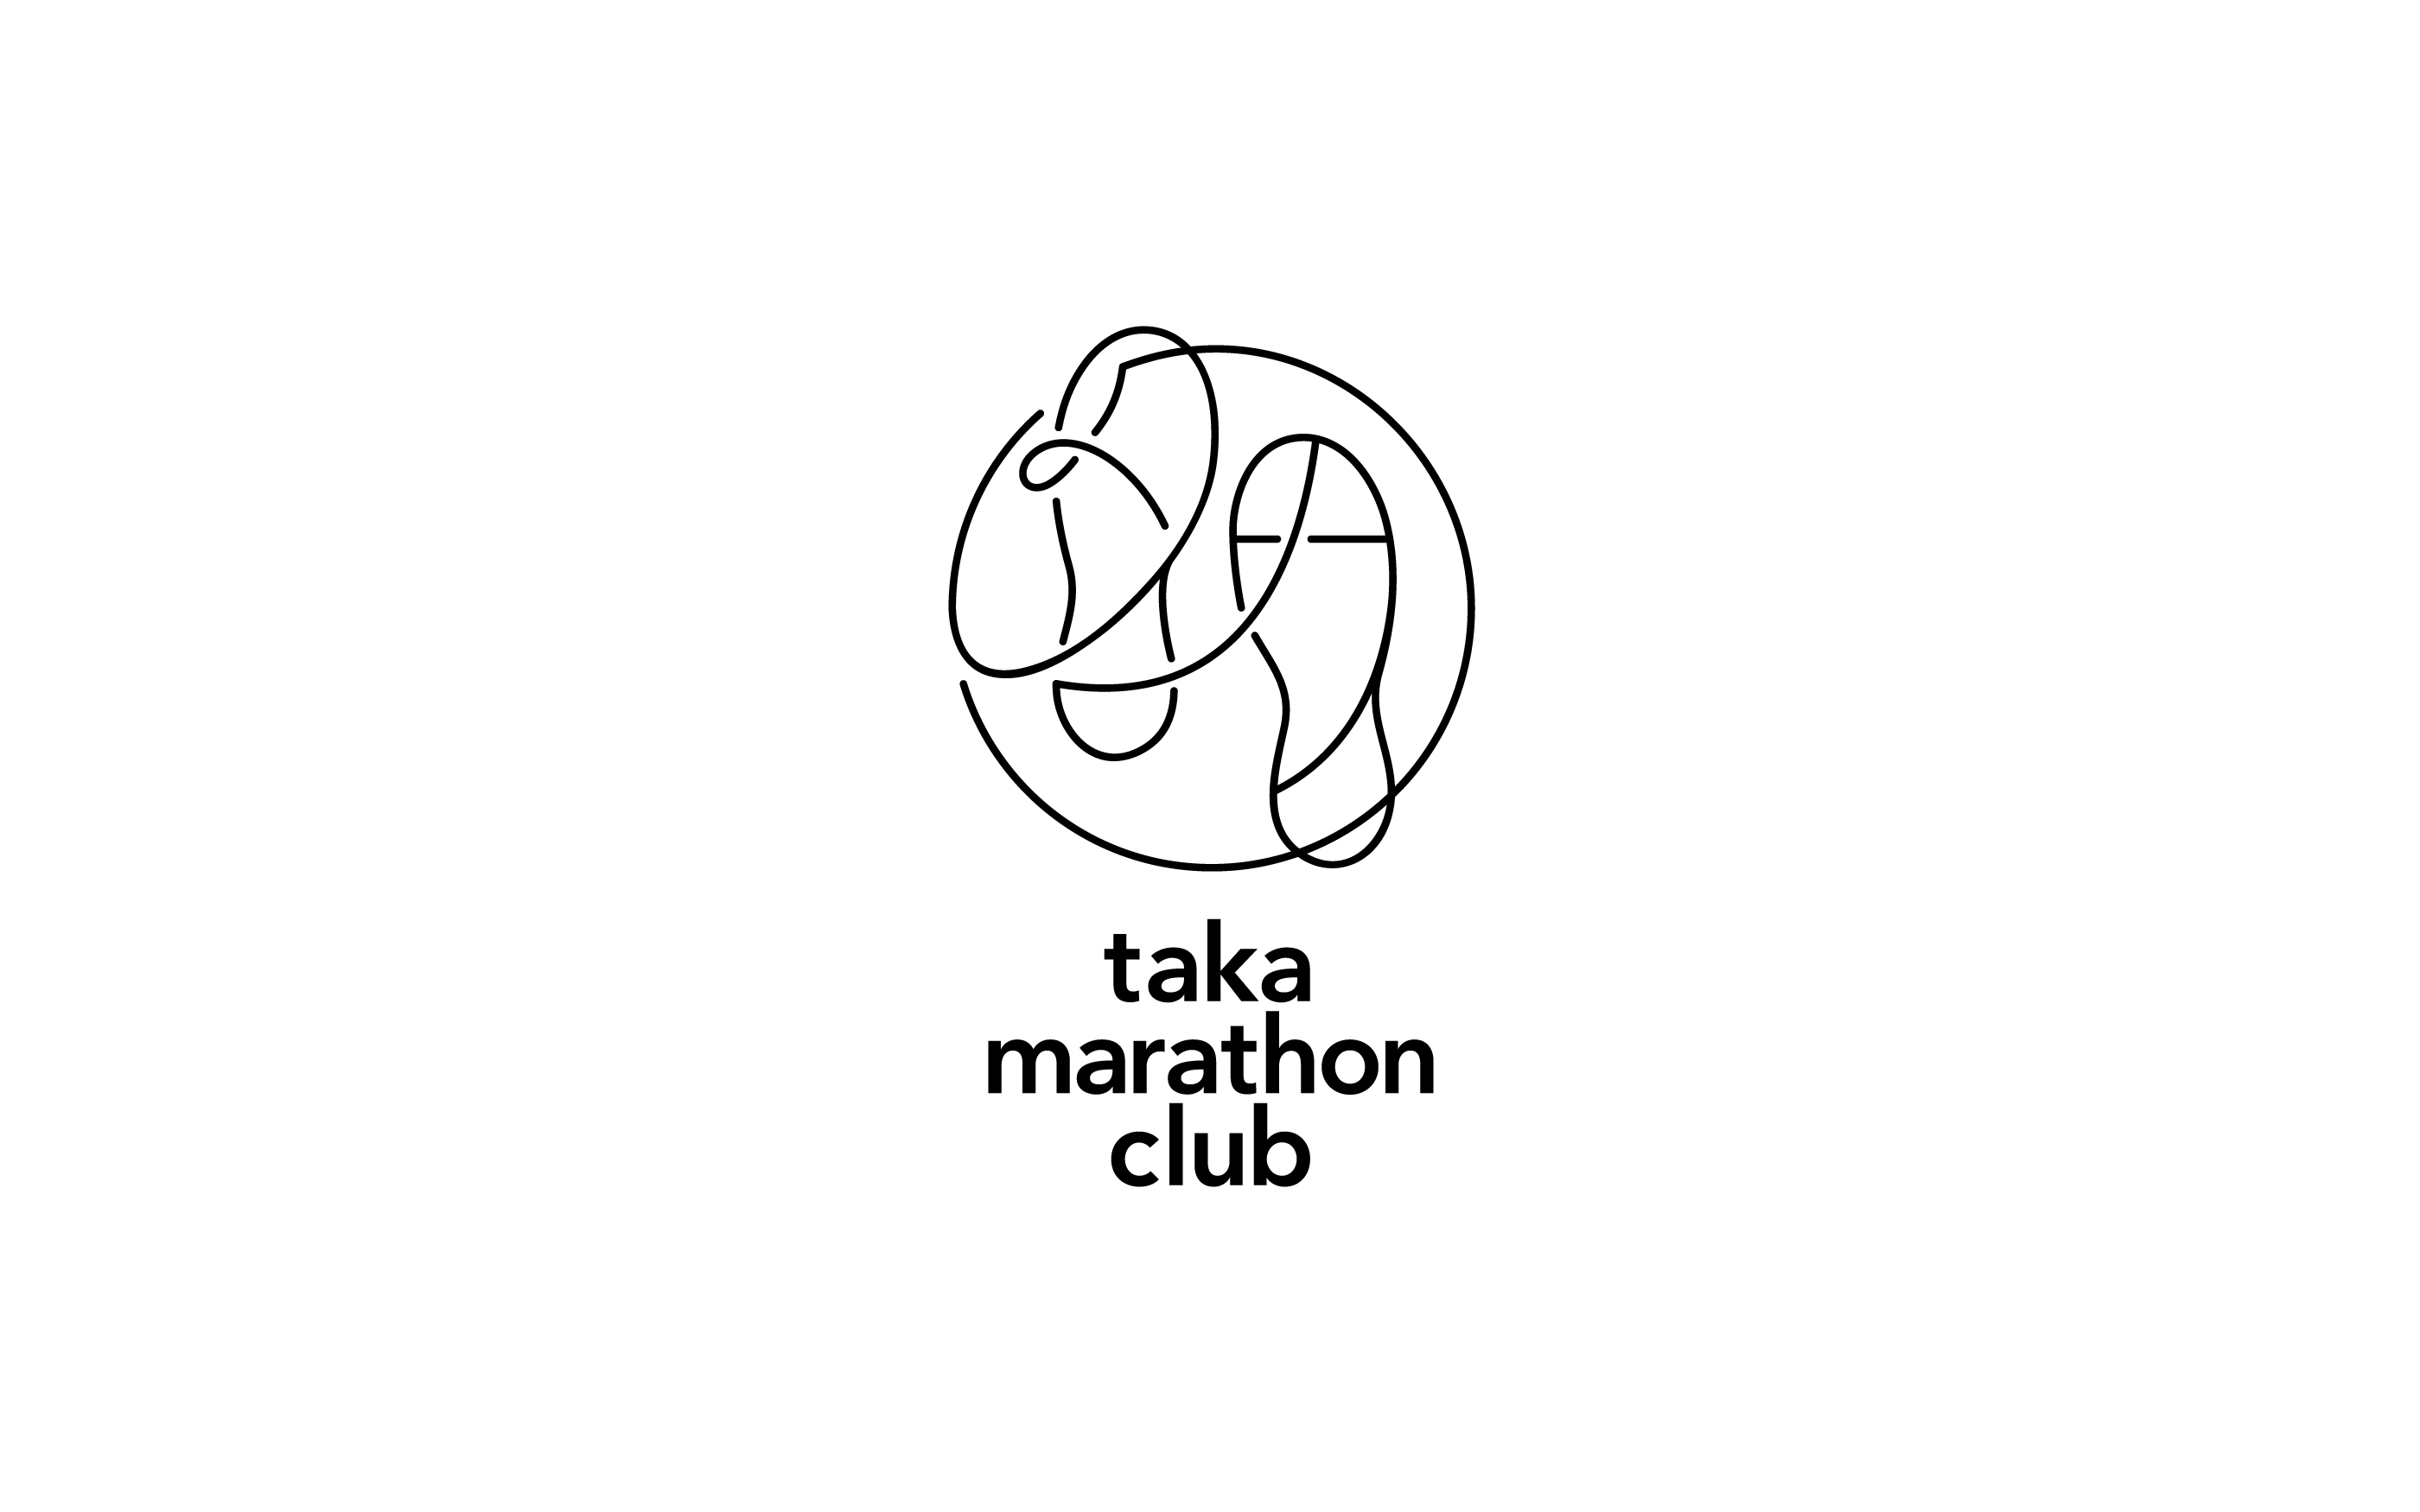 タカマラソンクラブ takamarathonclub, bi